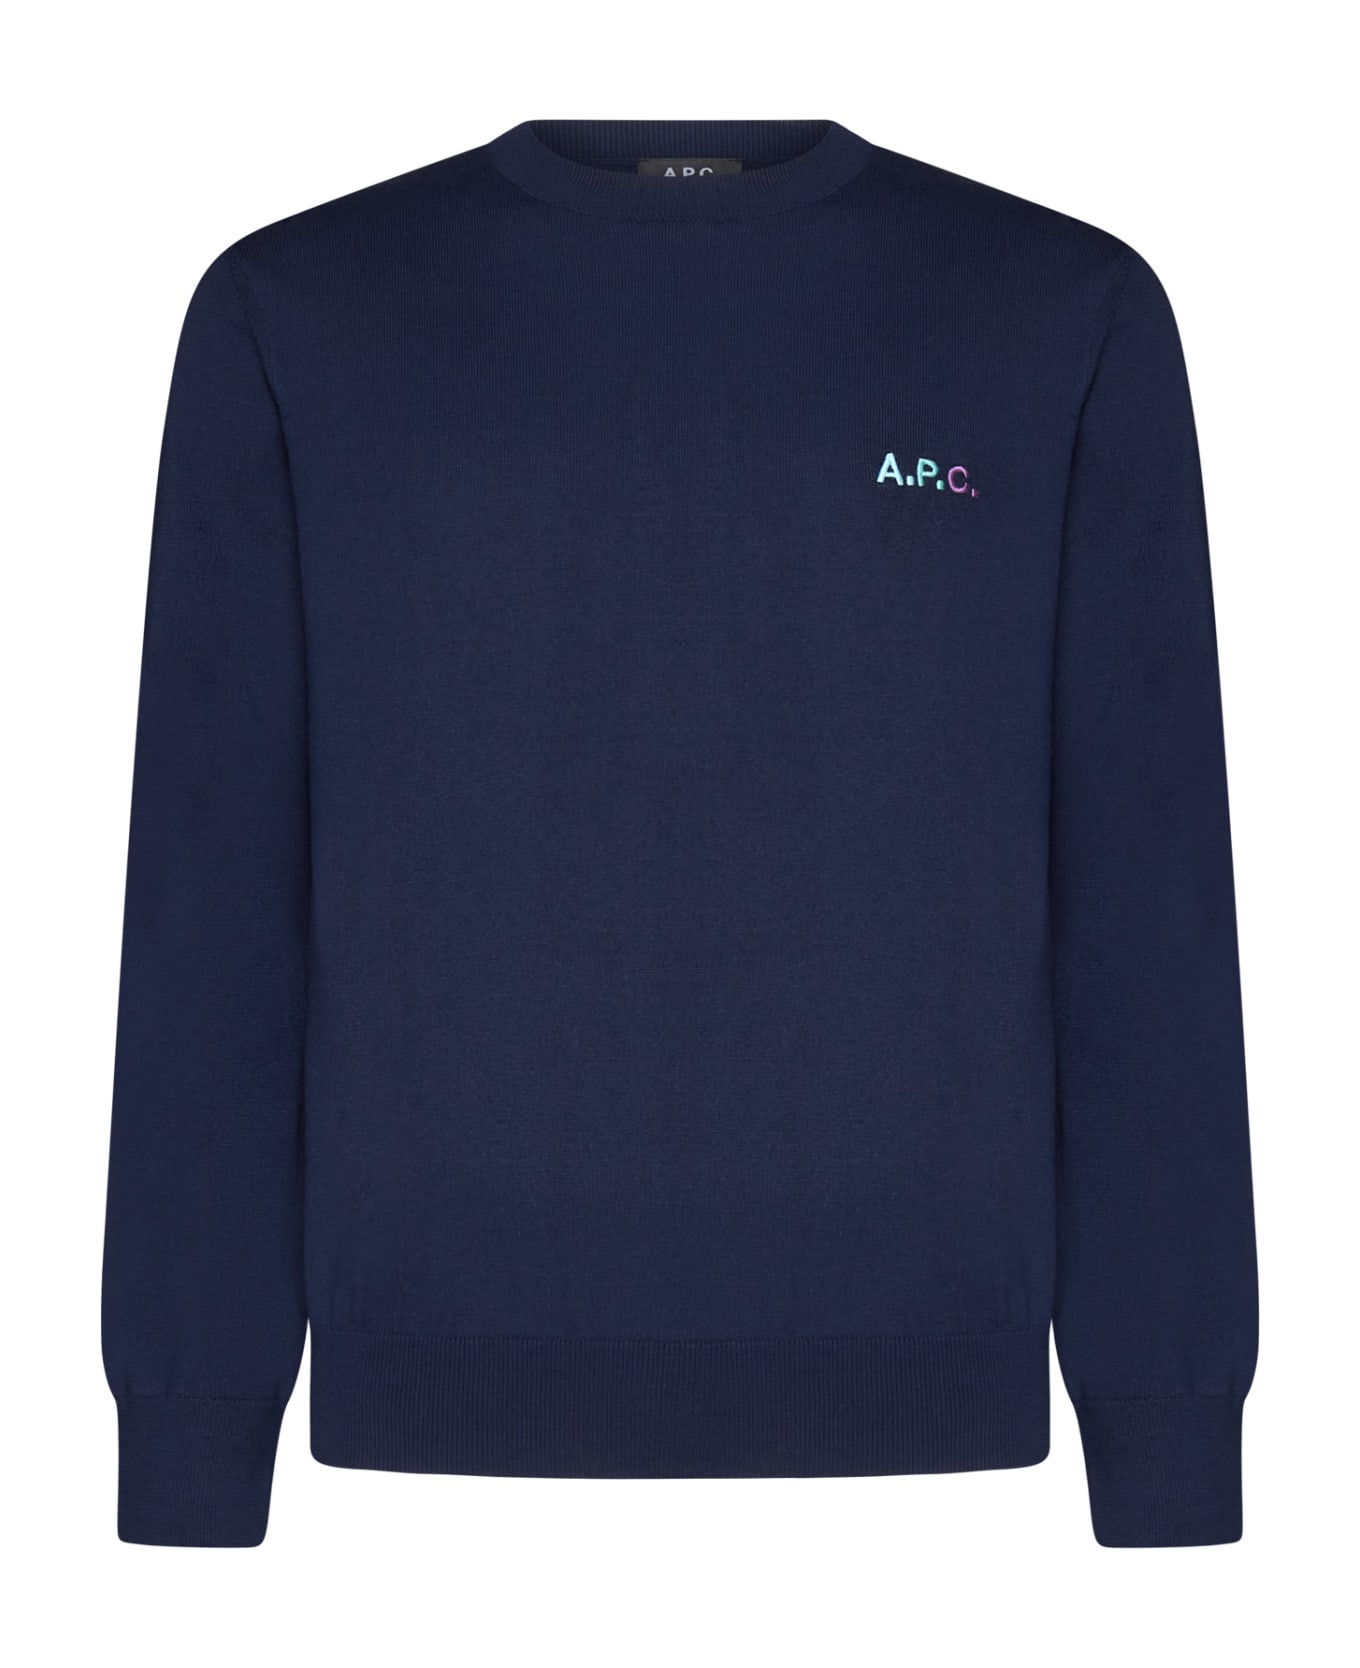 A.P.C. Sweater - Dark navy